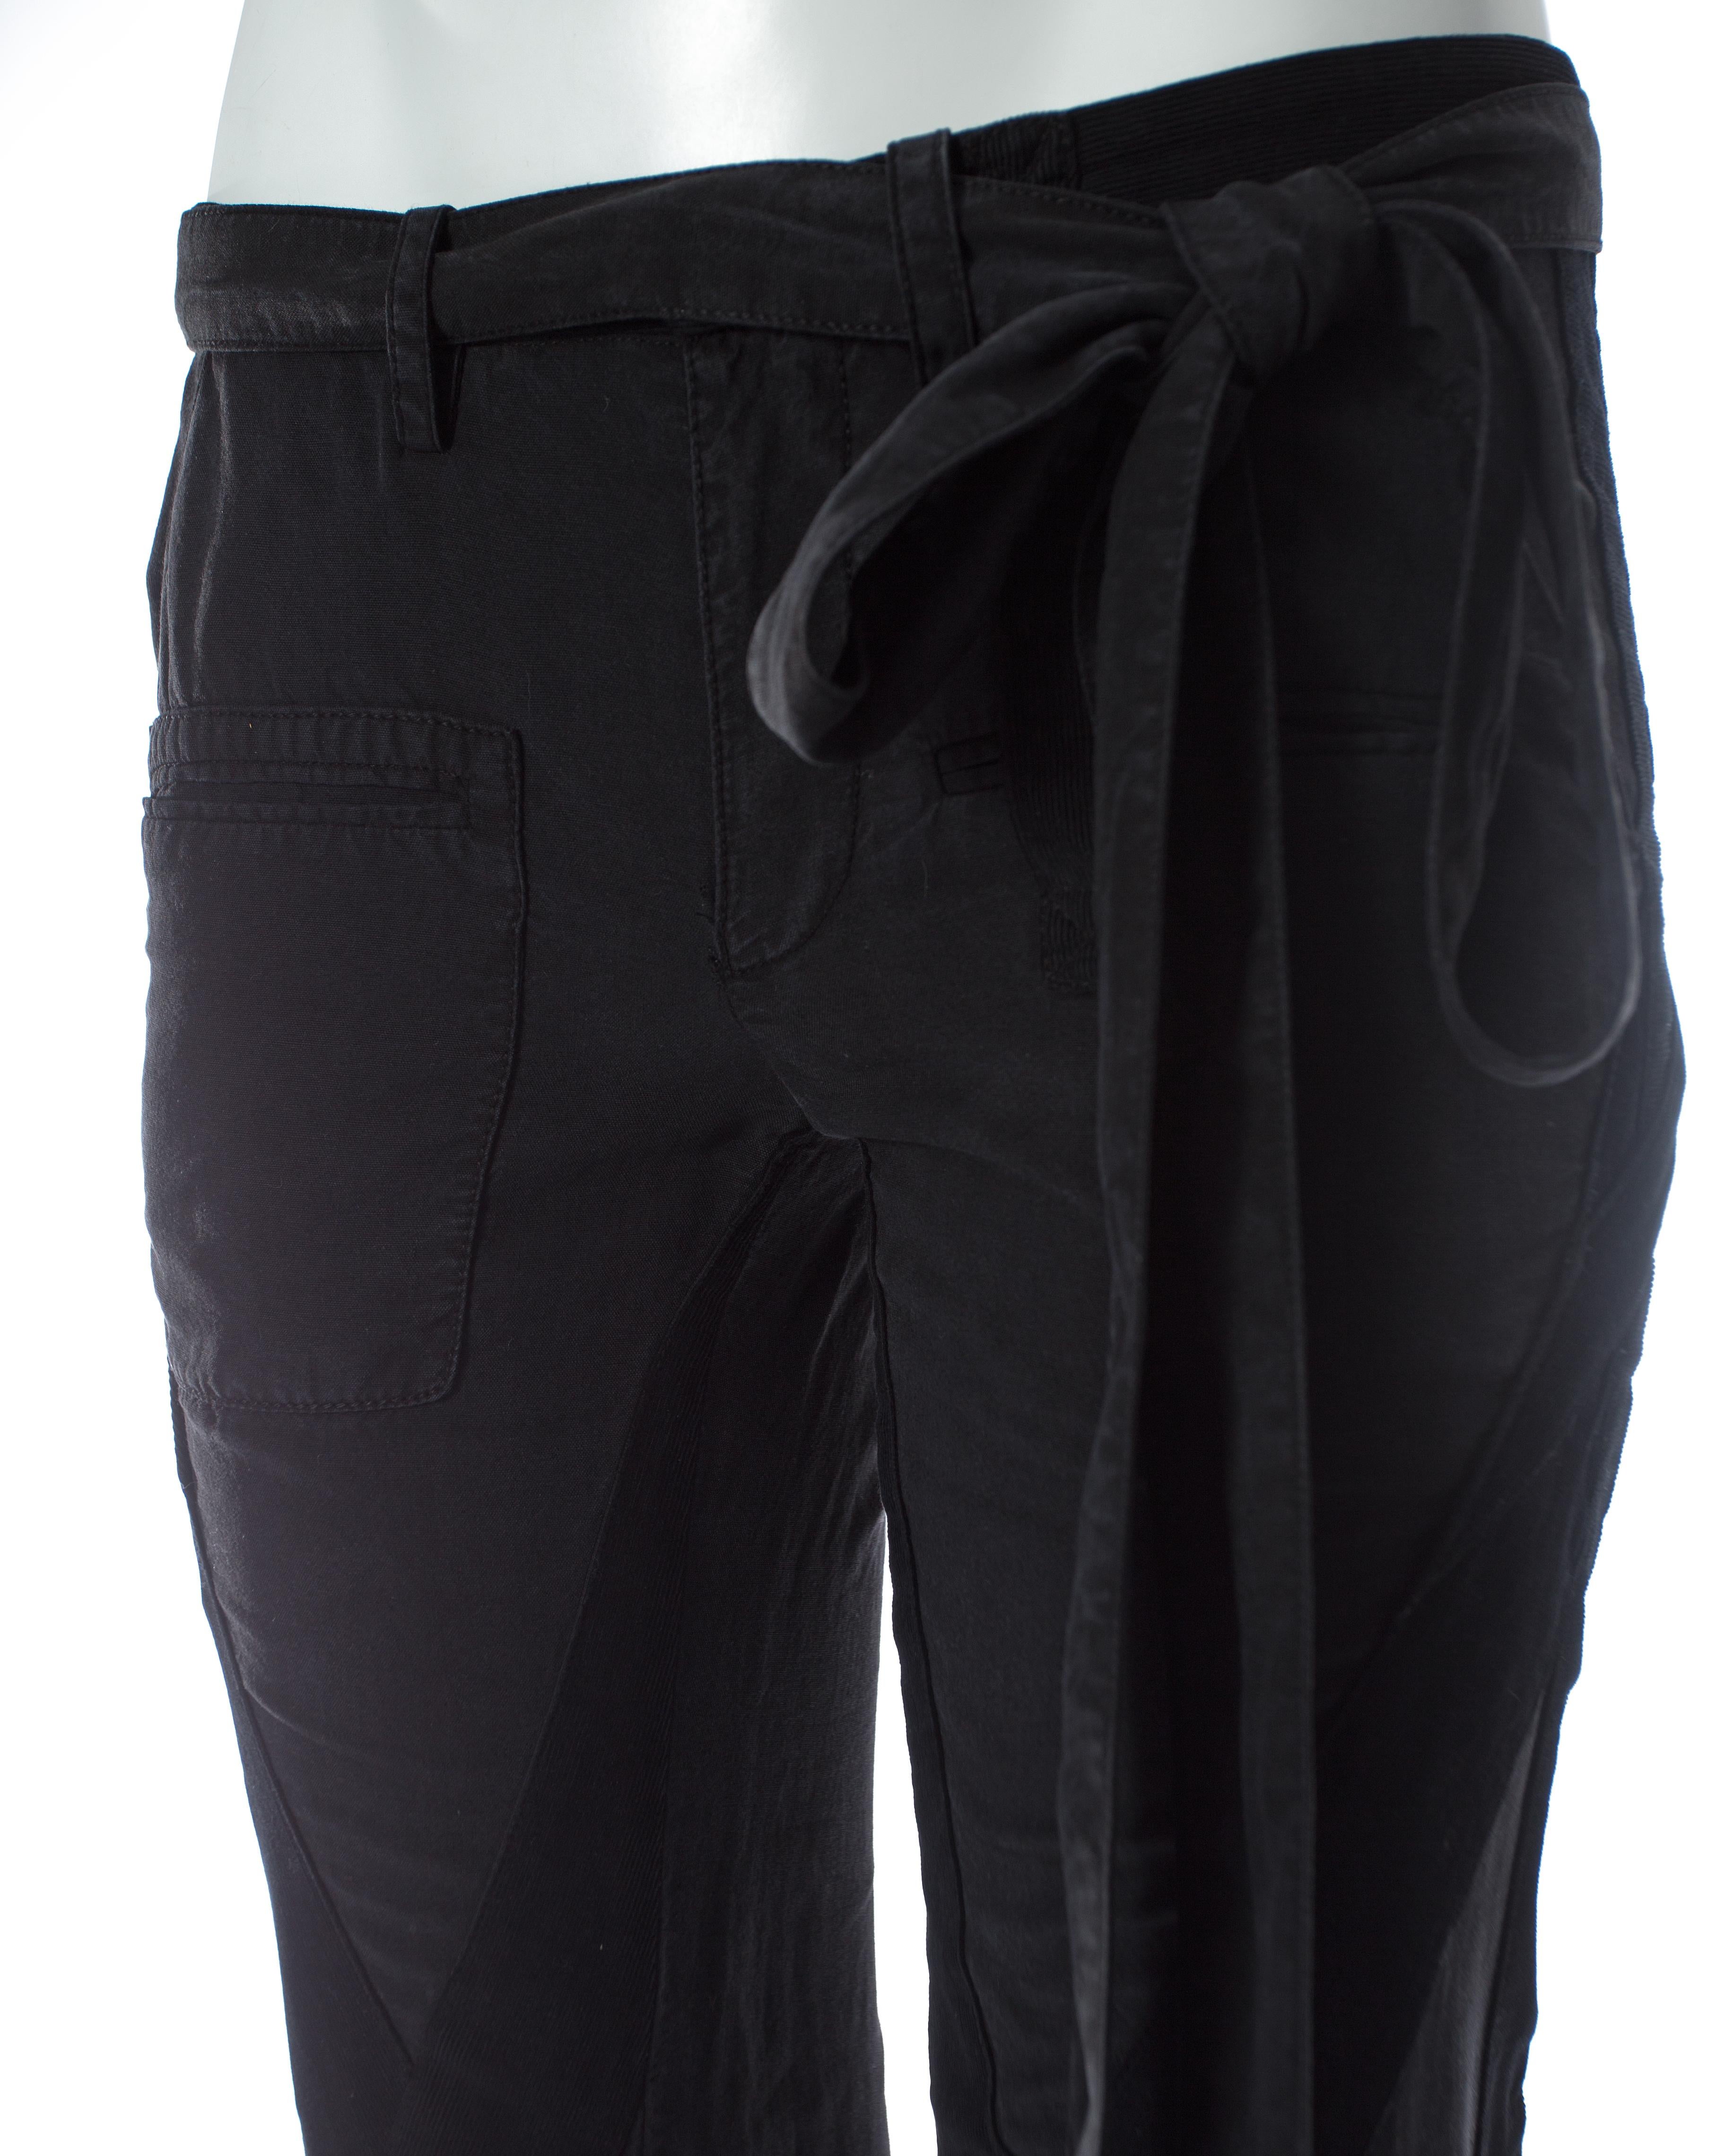 Women's or Men's Balenciaga Nicolas Ghesquière black cotton and corduroy cargo pants, SS 2002